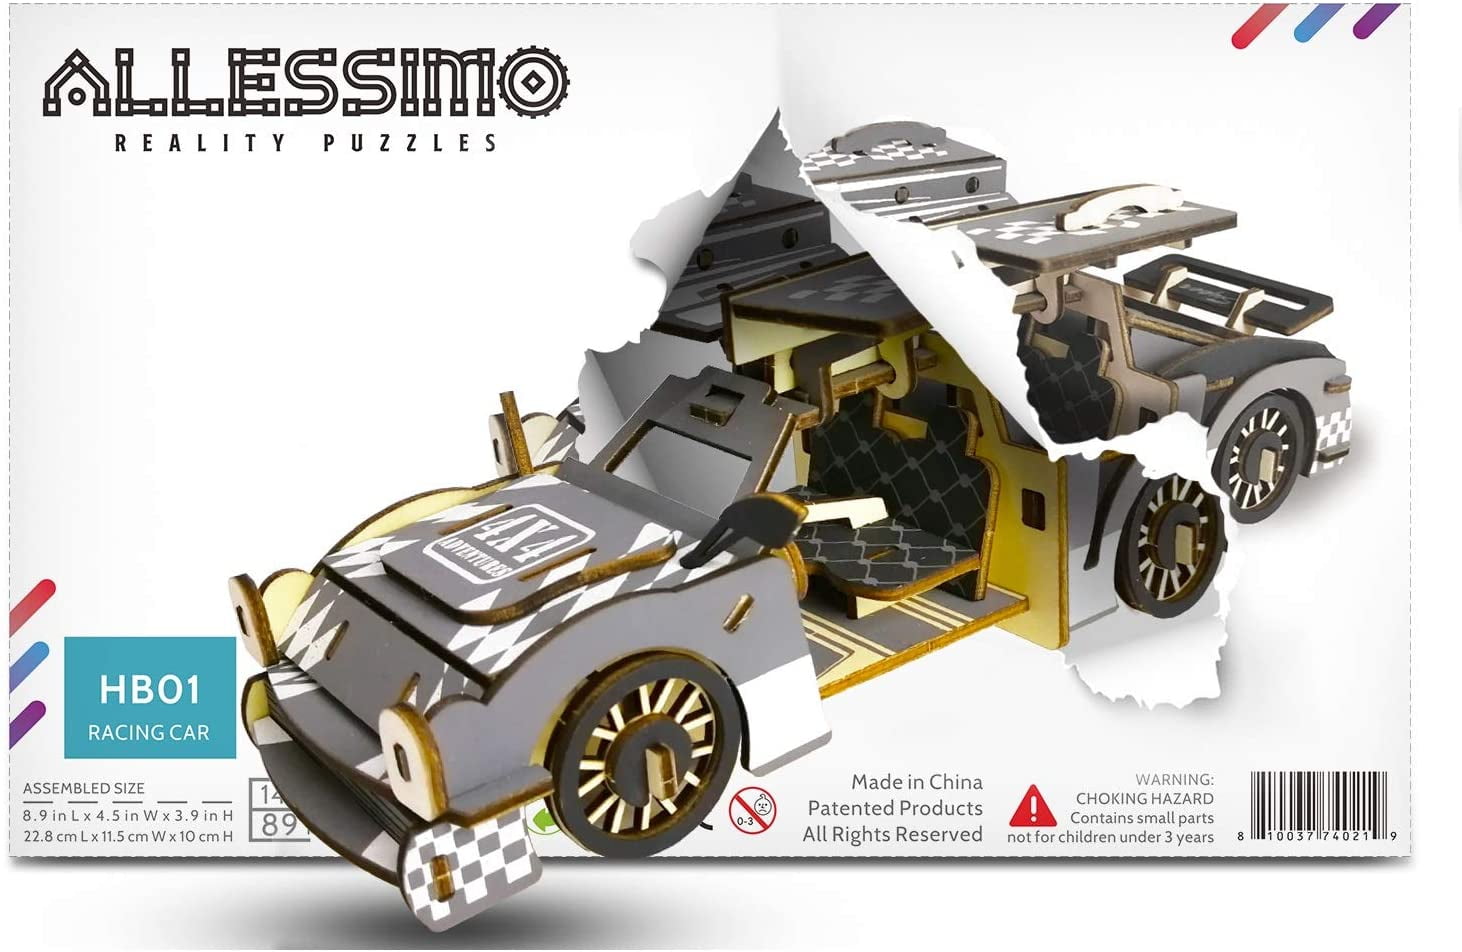 Laser Cut Wooden Formula 1 Race Car 3D Model/Puzzle Kit